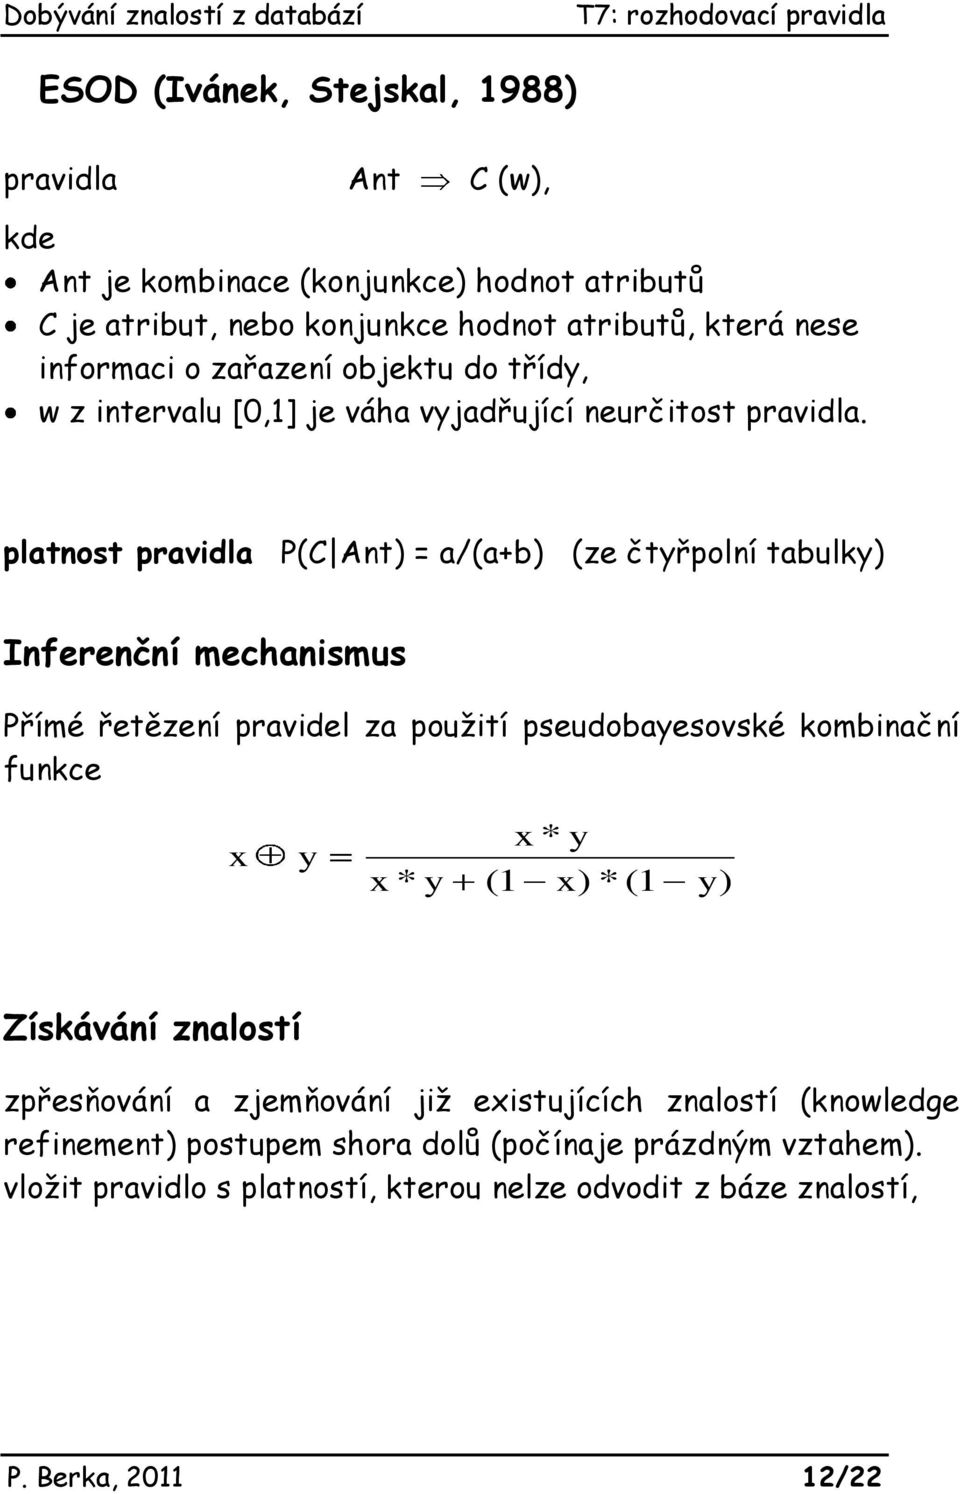 platnost pravidla P(C Ant) = a/(a+b) (ze čtyřpolní tabulky) Inferenční mechanismus Přímé řetězení pravidel za použití pseudobayesovské kombinační funkce x y x * y x *